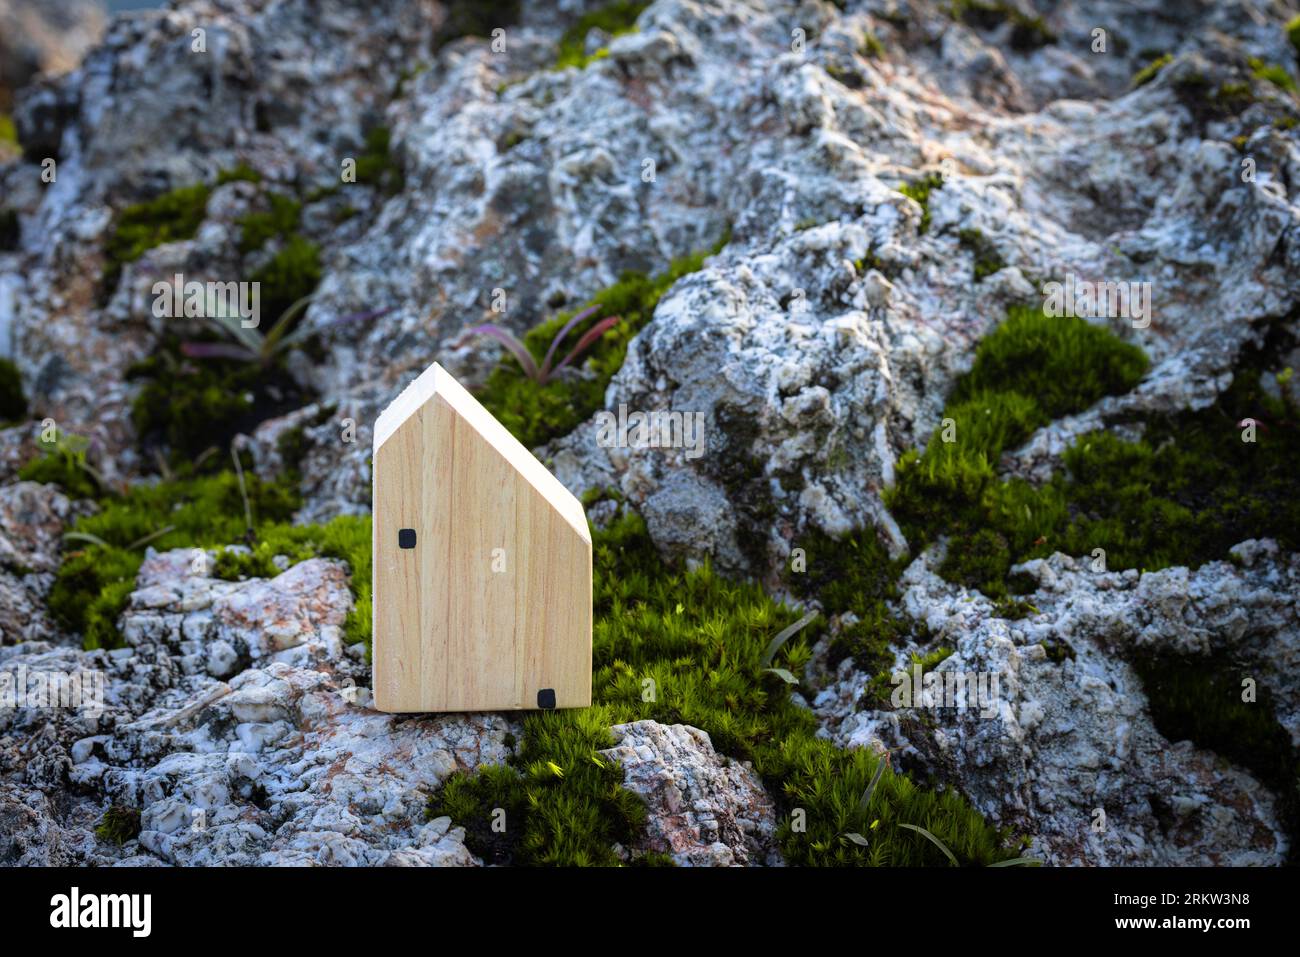 Casa in miniatura su roccia su un giardino verde sfocato a mezzogiorno luce. Immagine per concetto di investimento immobiliare. Immagine per concep. Coppia amore Foto Stock